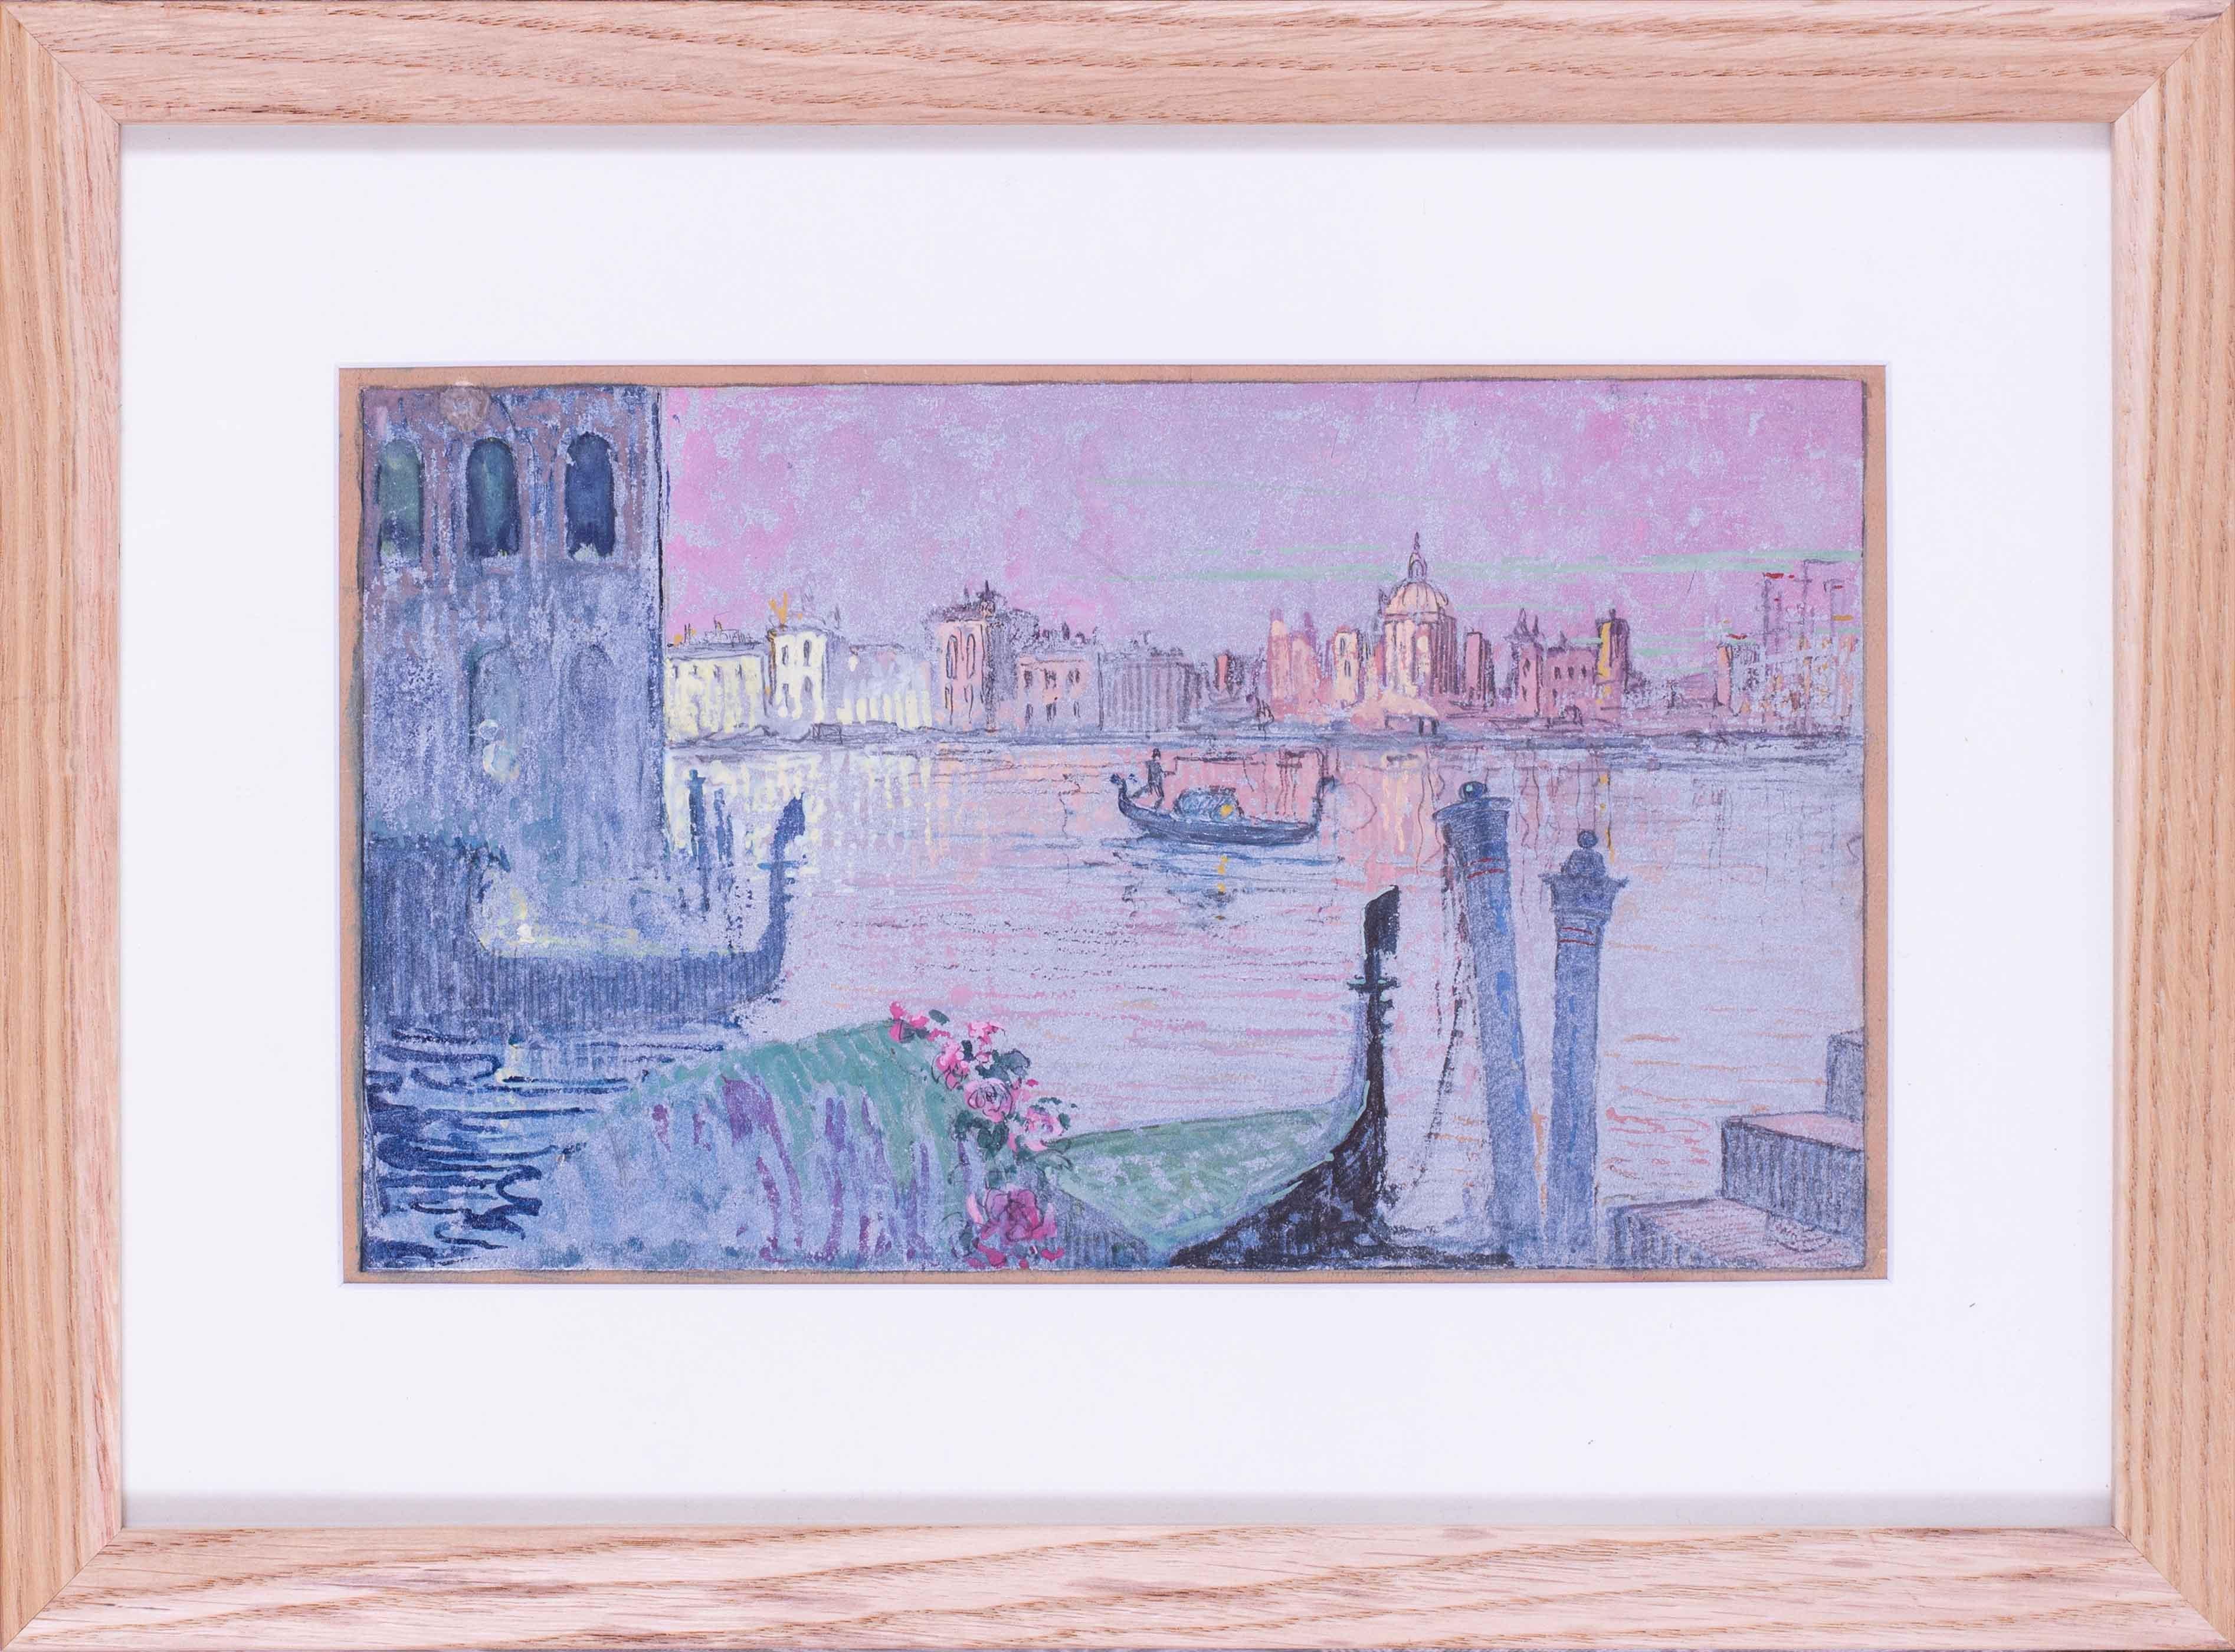 Peinture en techniques mixtes du 20e siècle représentant un gondolier sur un grand canal, Venise